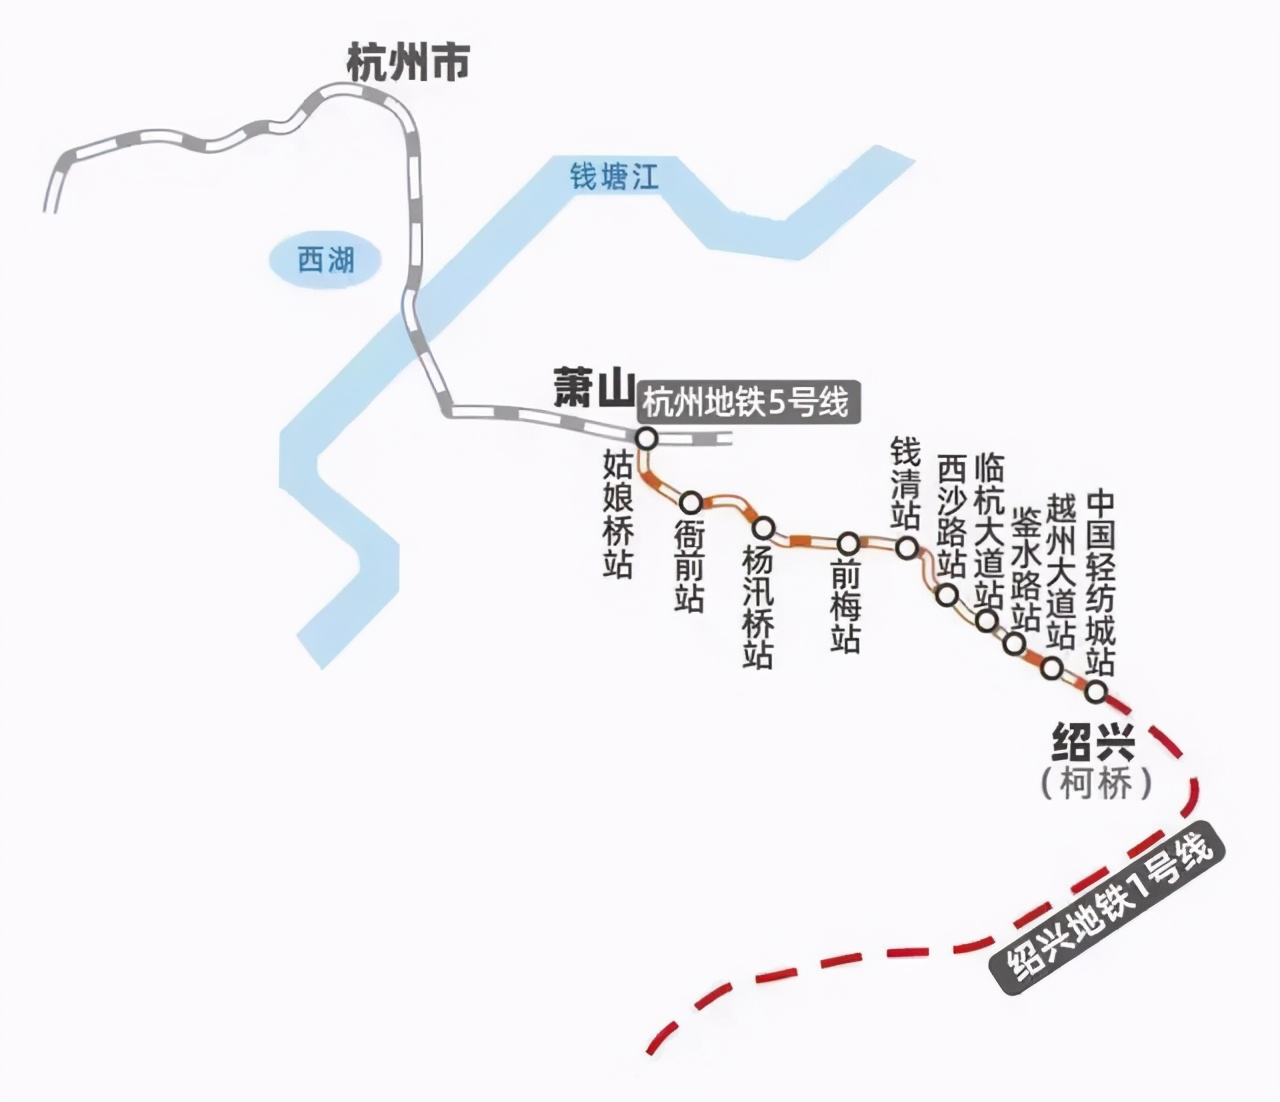 杭州都市圈的8条城际铁路进展如何？